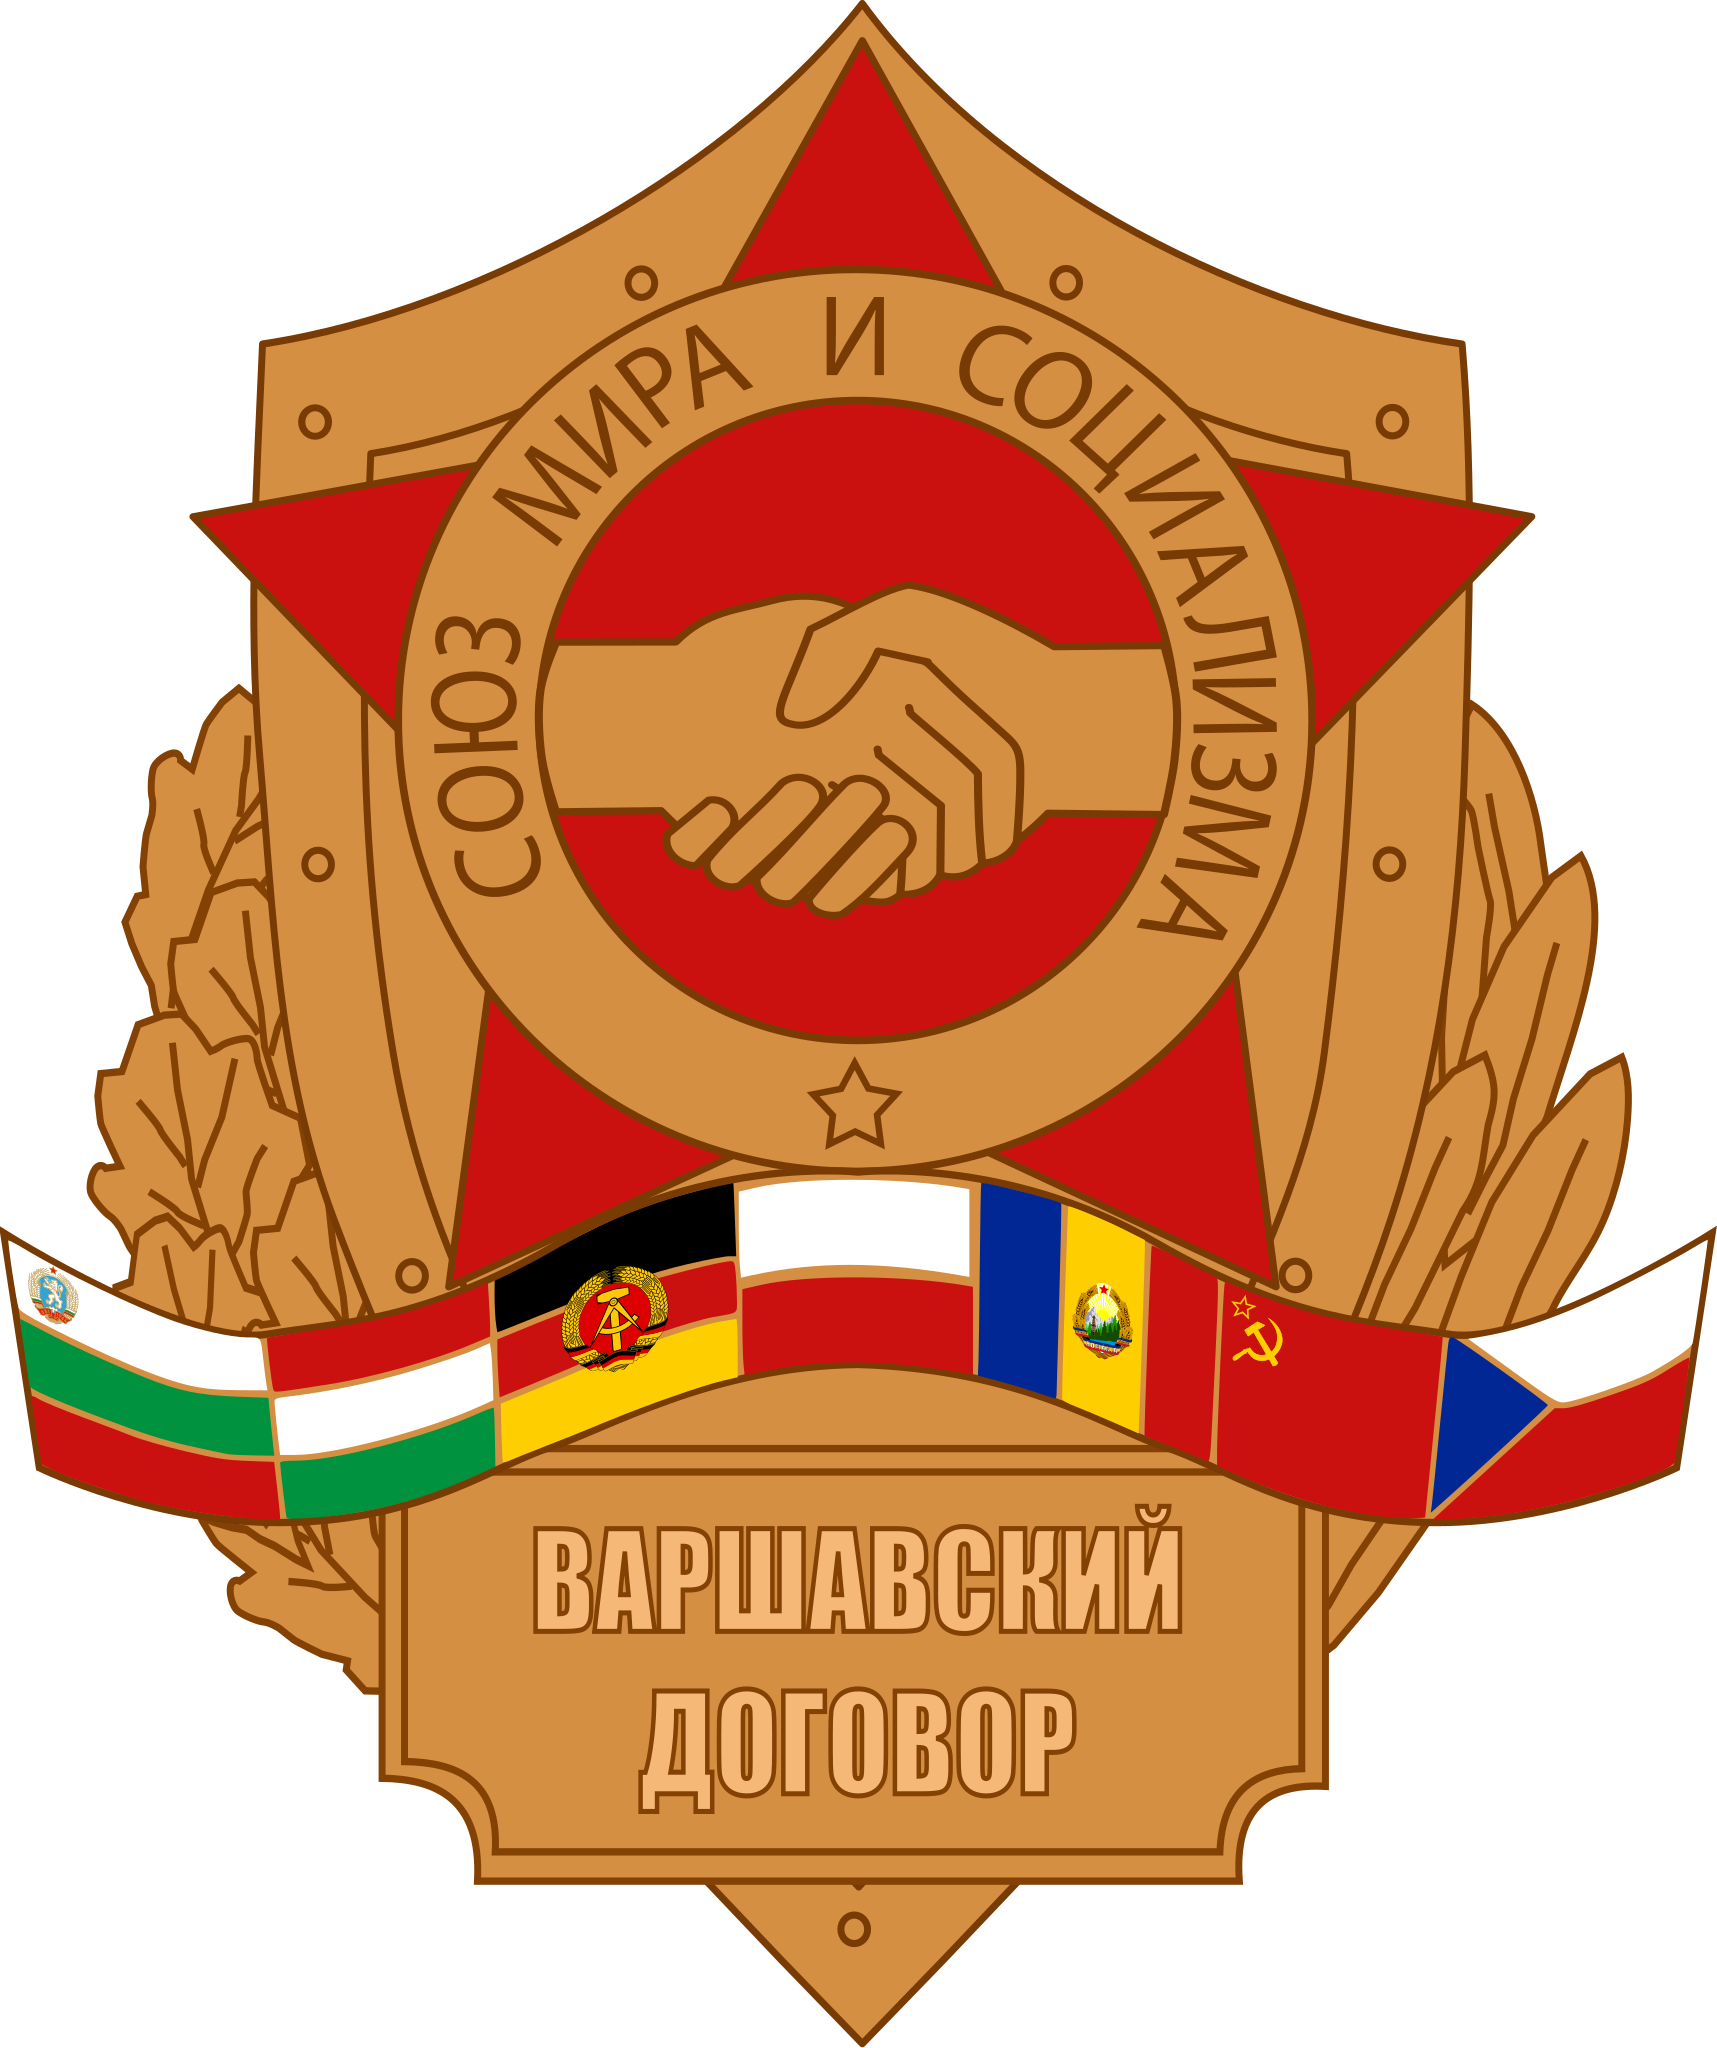 Warsaw Pact logo.png